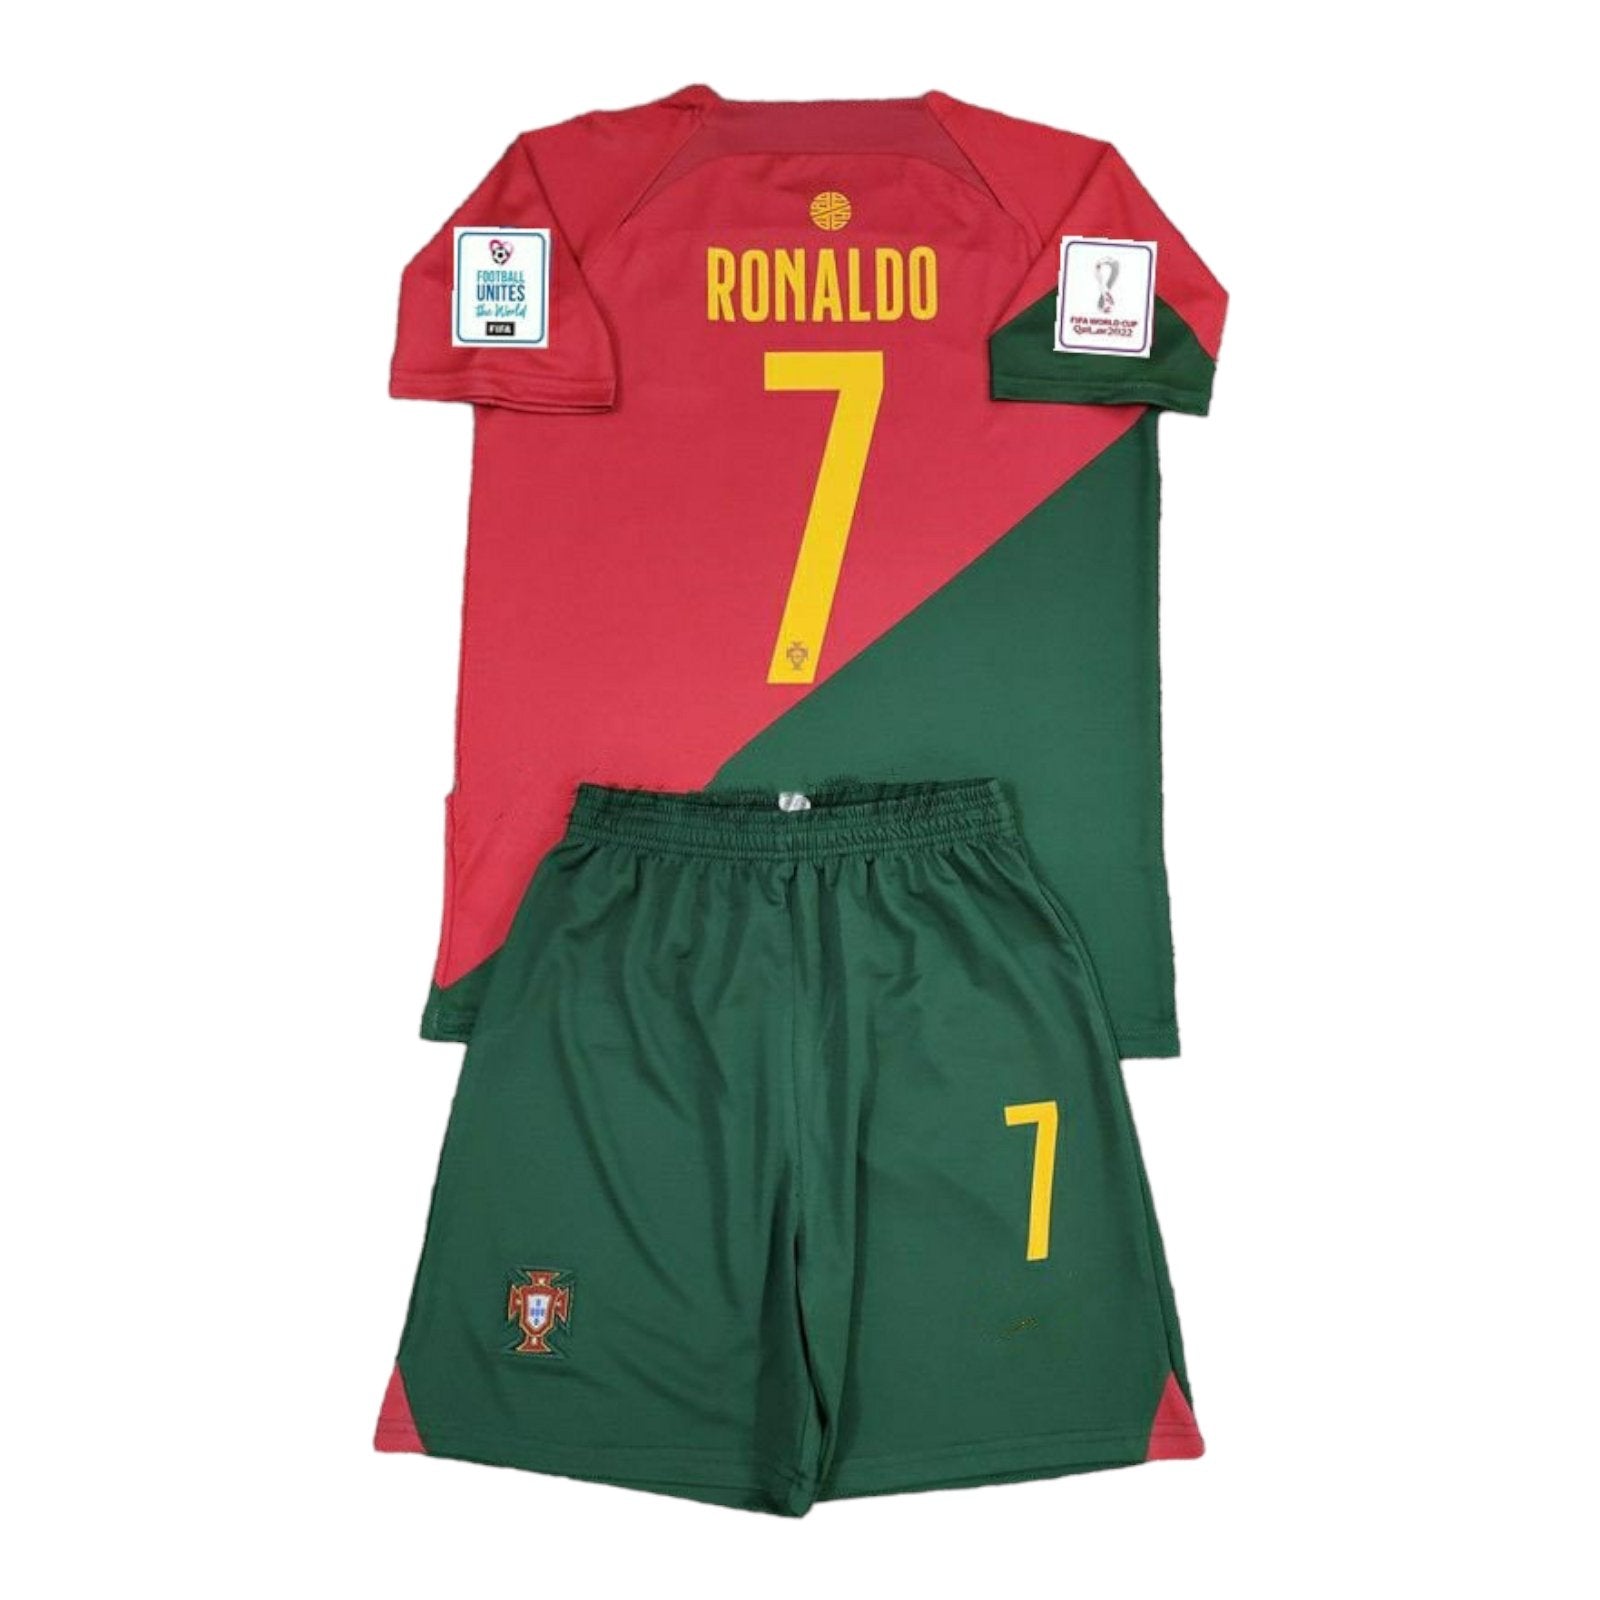 portuguese ronaldo jersey